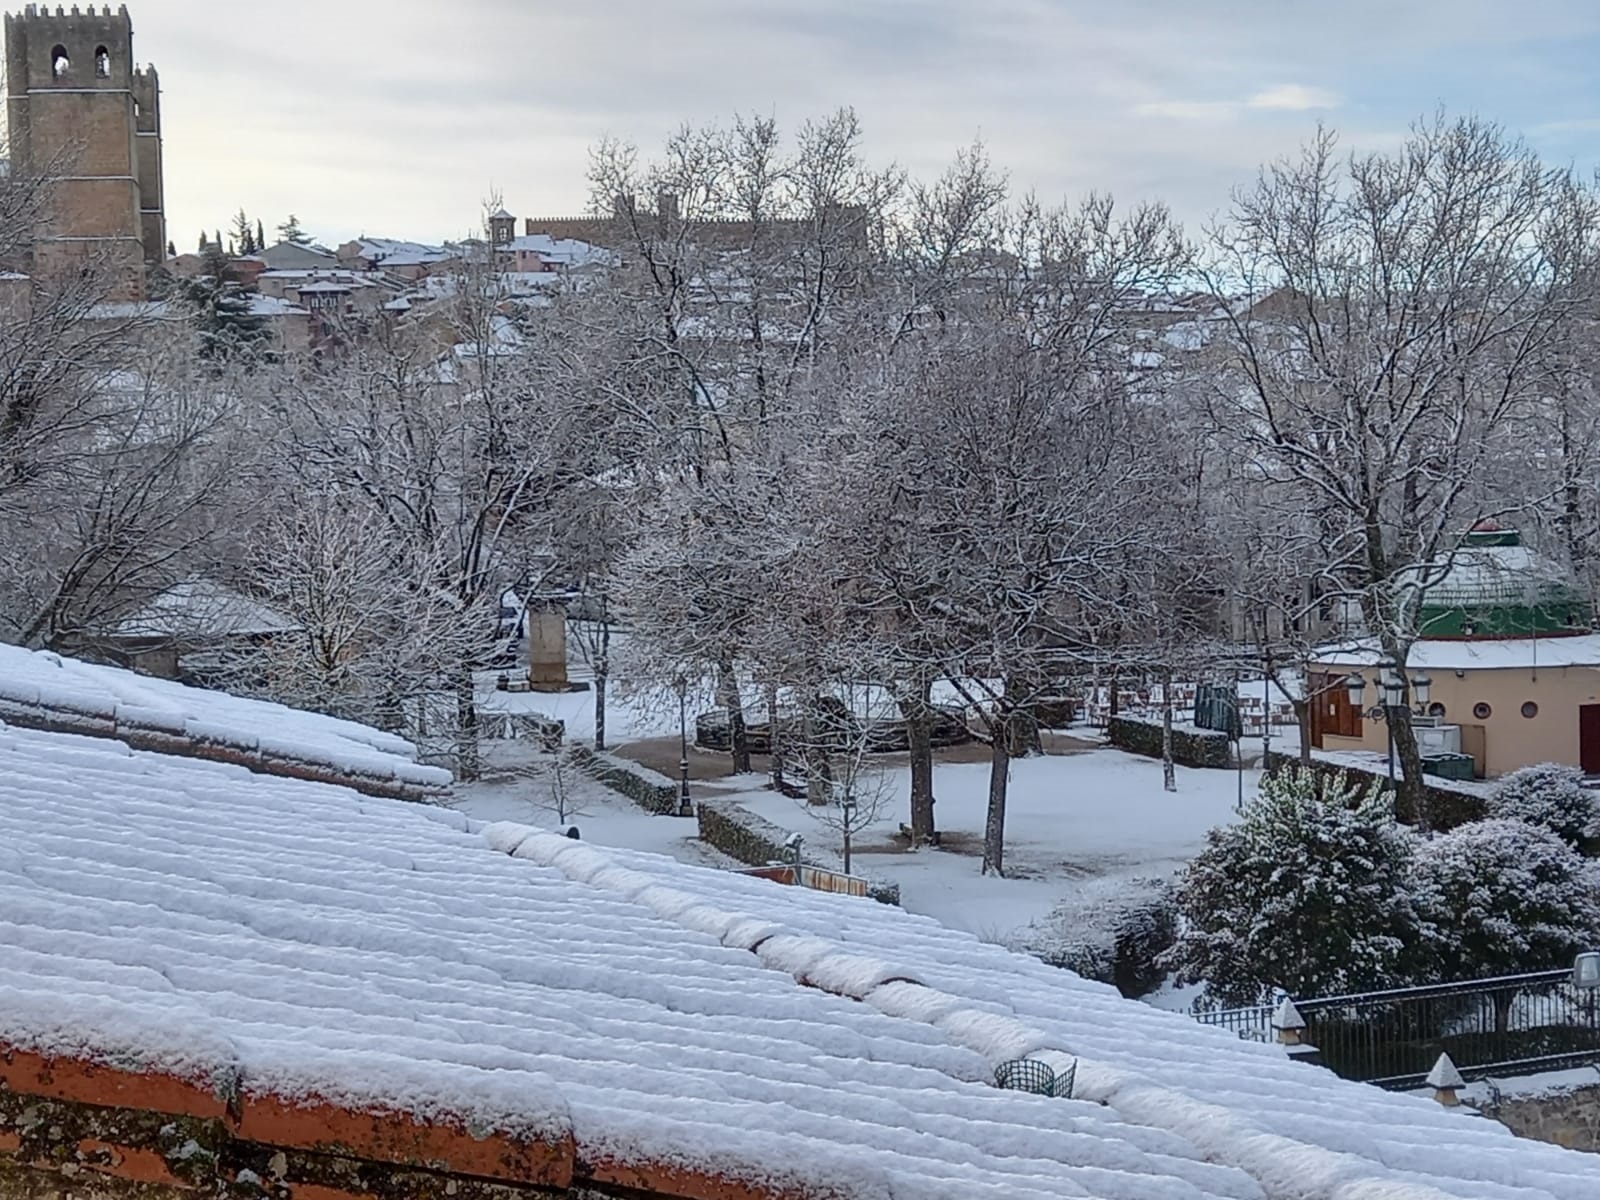 Nieve sobre Sigüenza el 1 de enero de 2021.